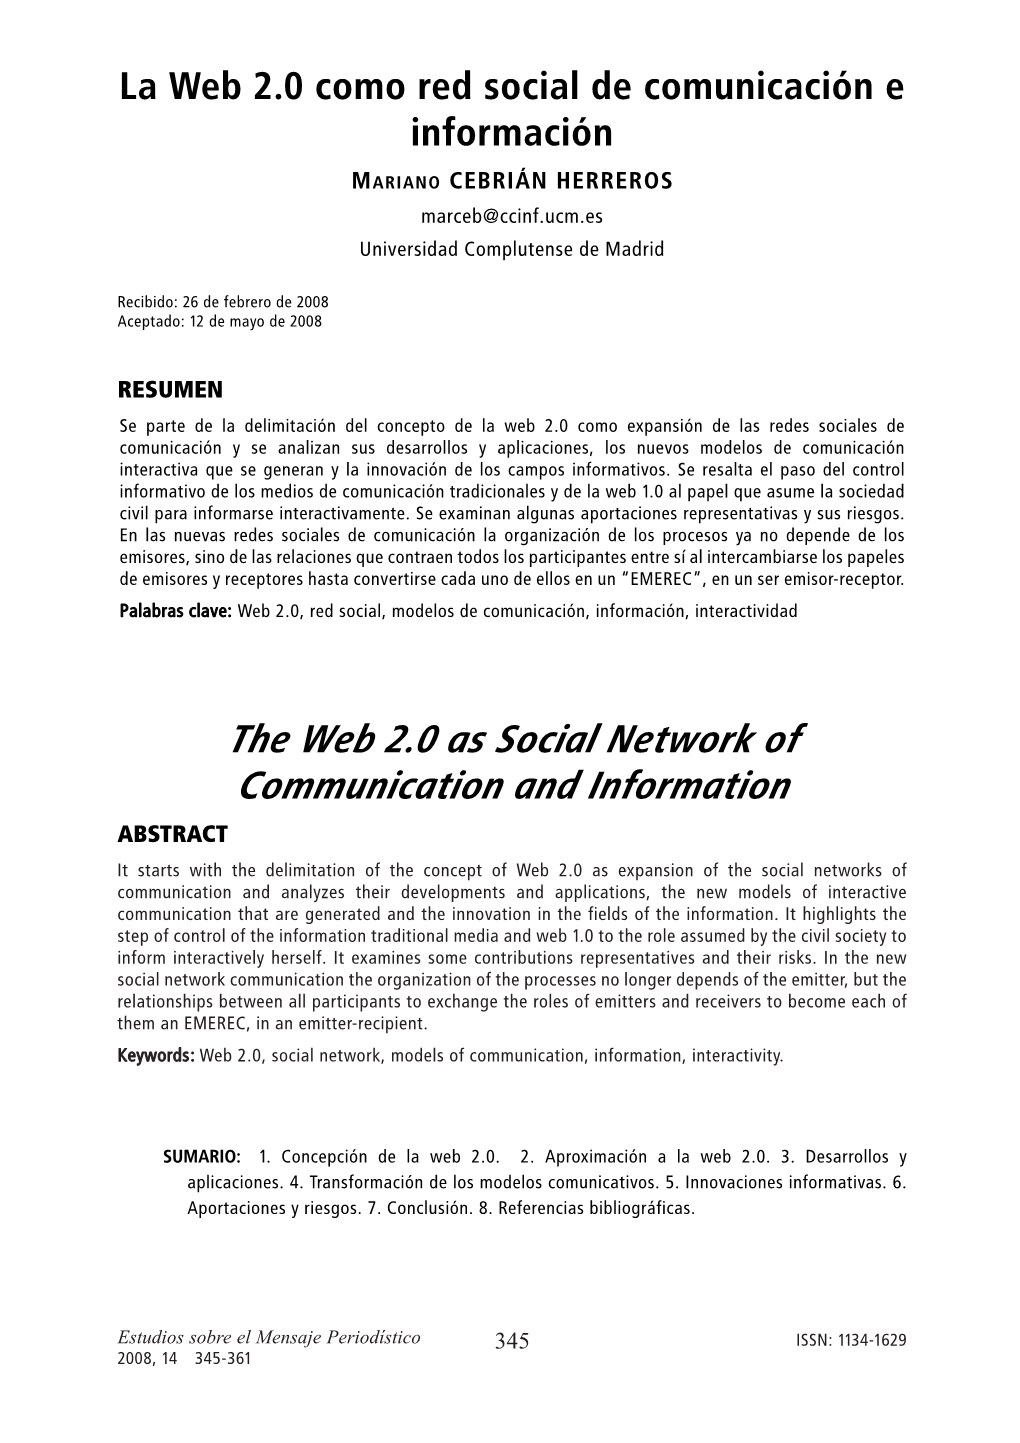 La Web 2.0 Como Red Social De Comunicación E Información